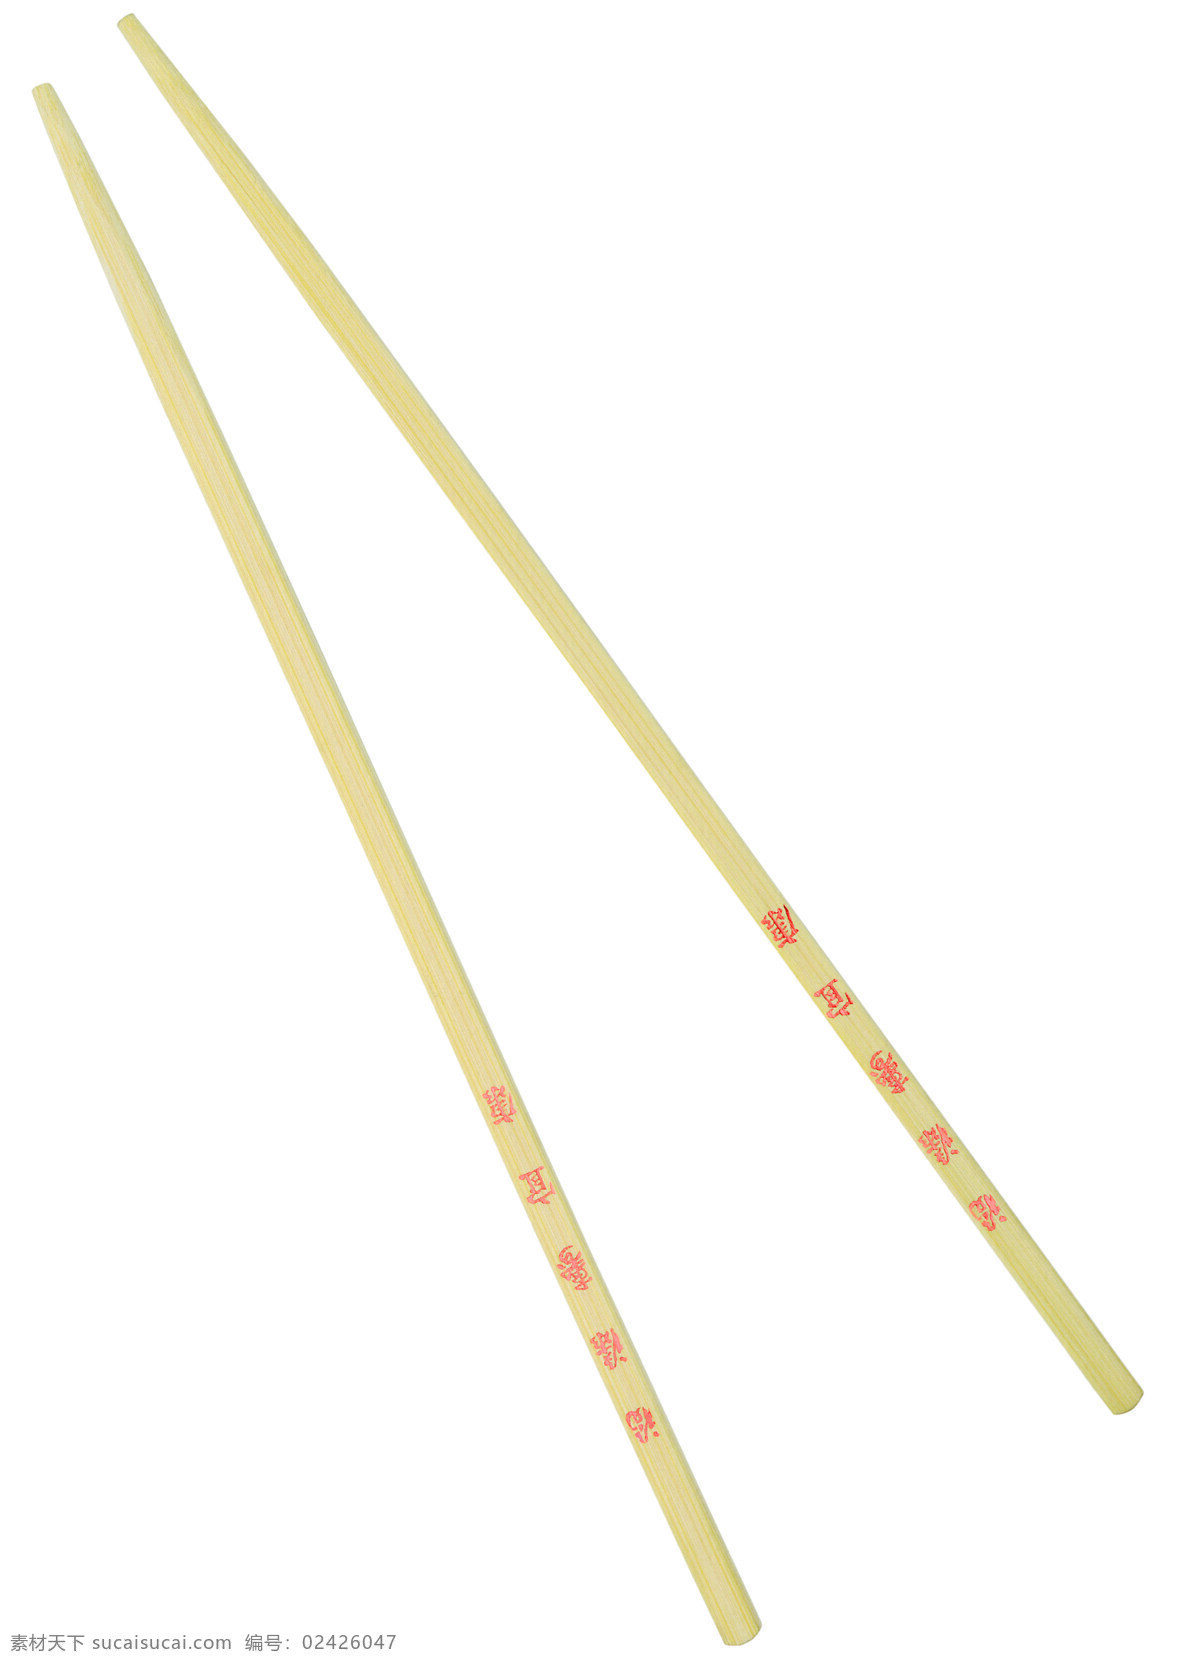 筷子 餐具 生活用品 家居生活 白色